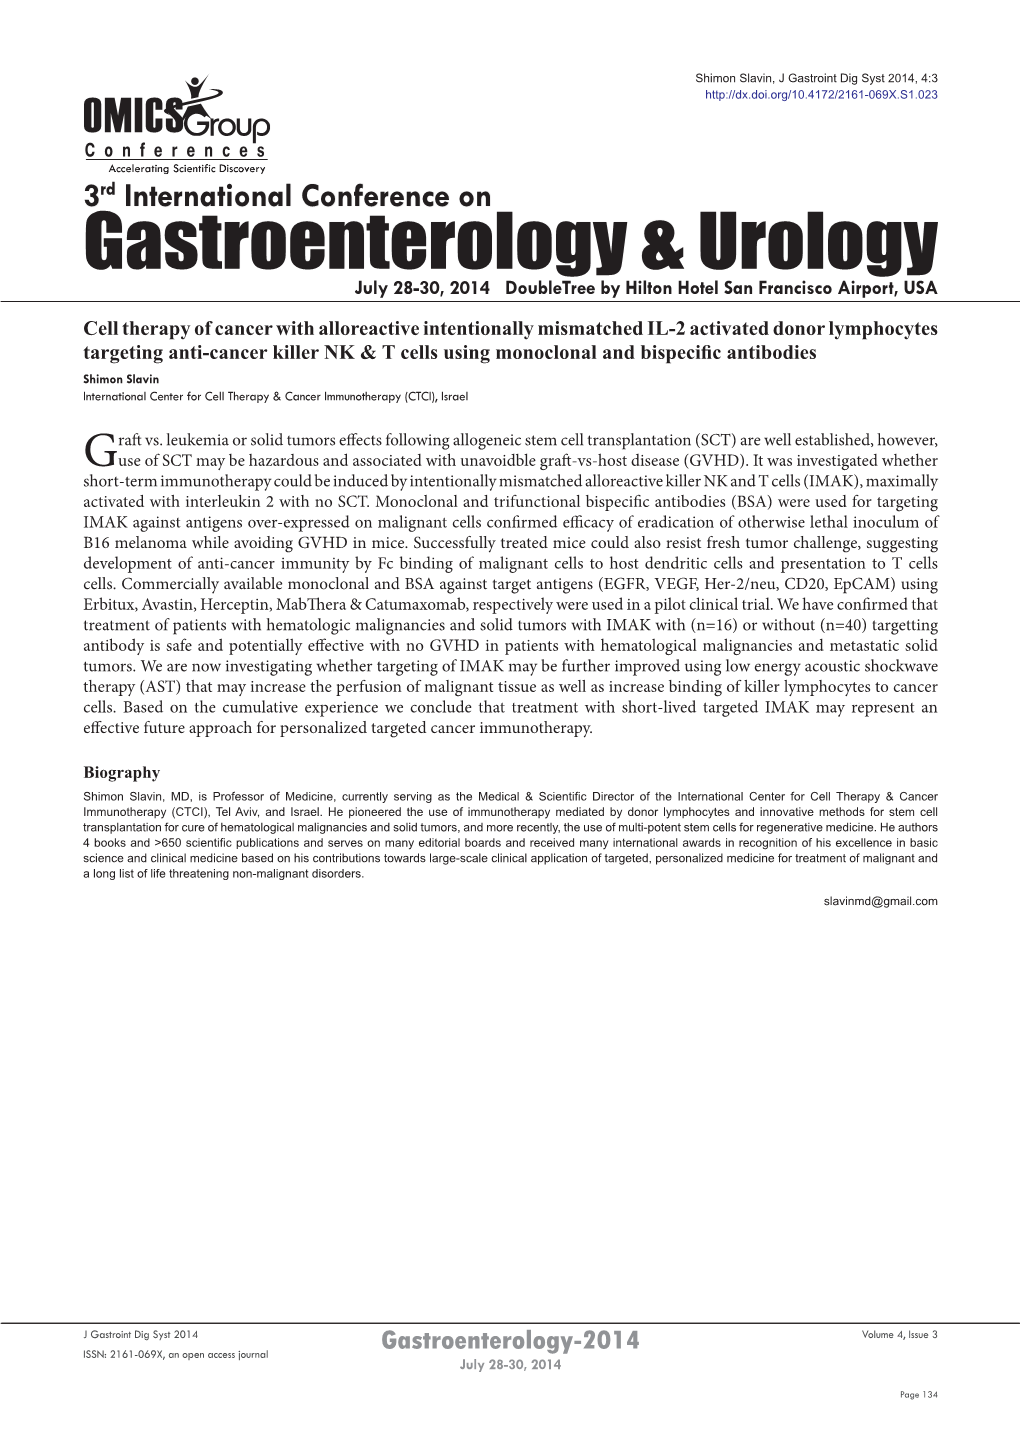 Gastroenterology & Urology